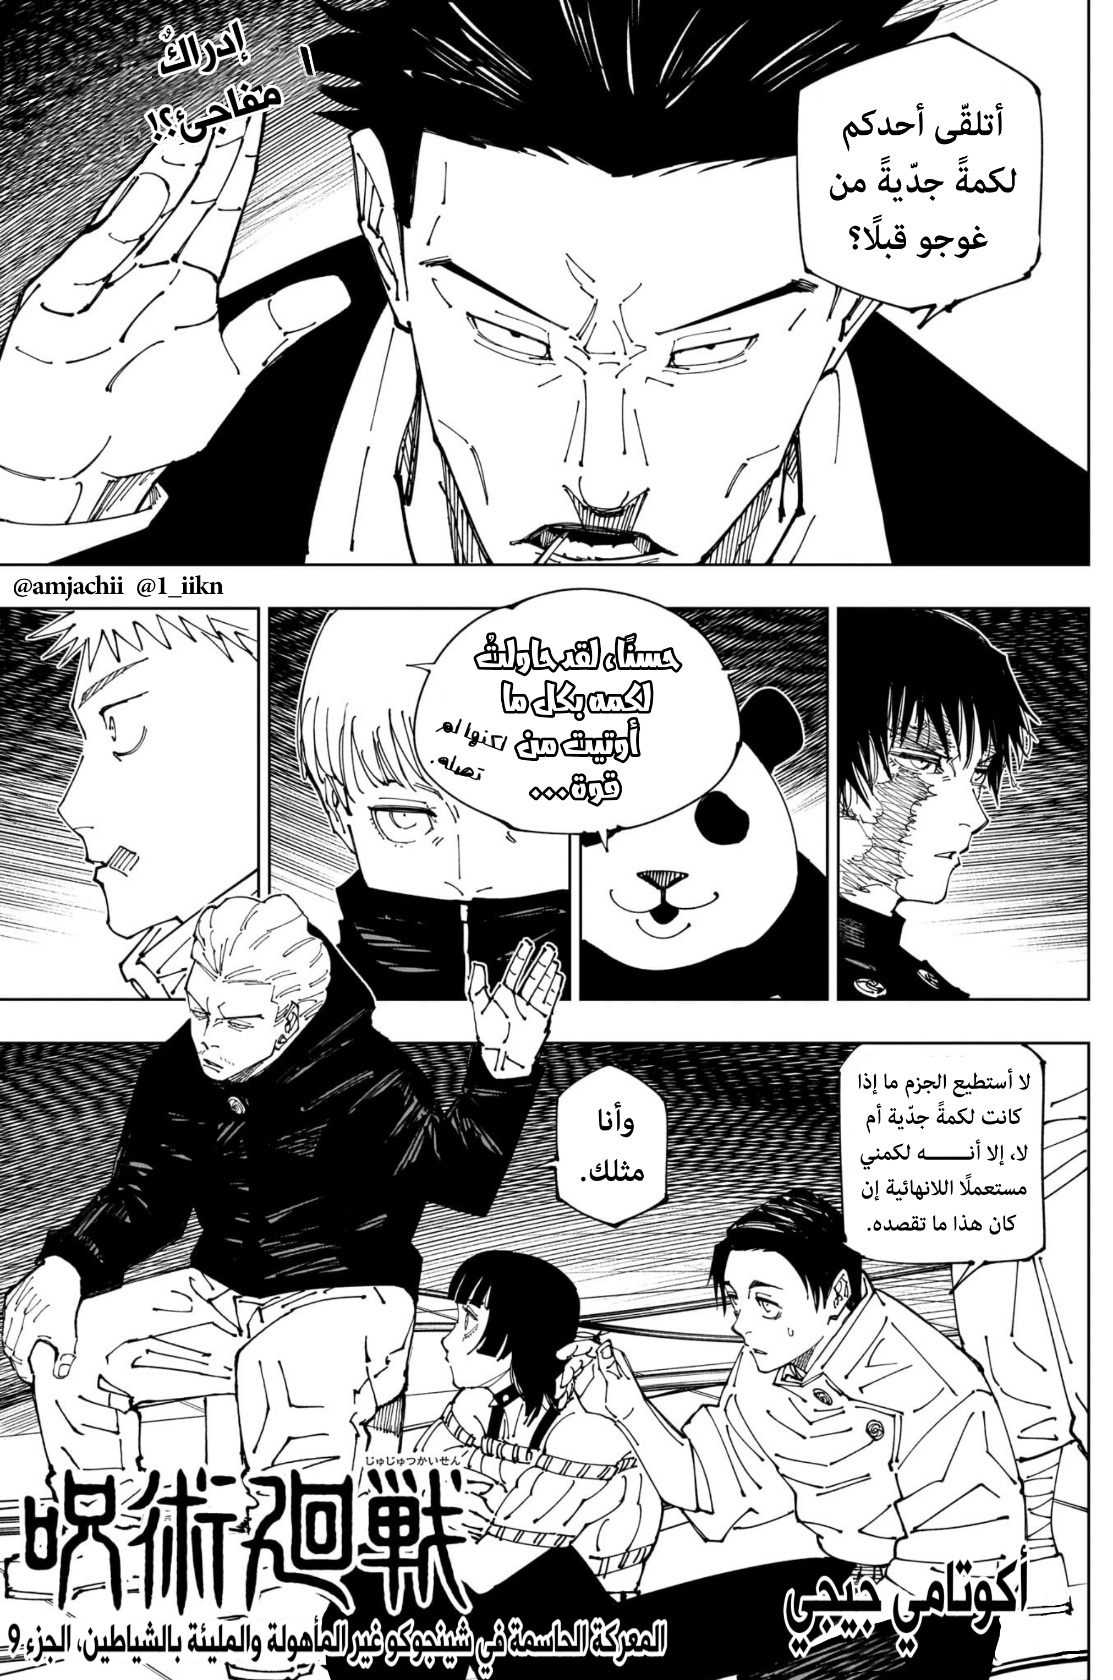 Jujutsu Kaisen: Chapter 231 - Page 1